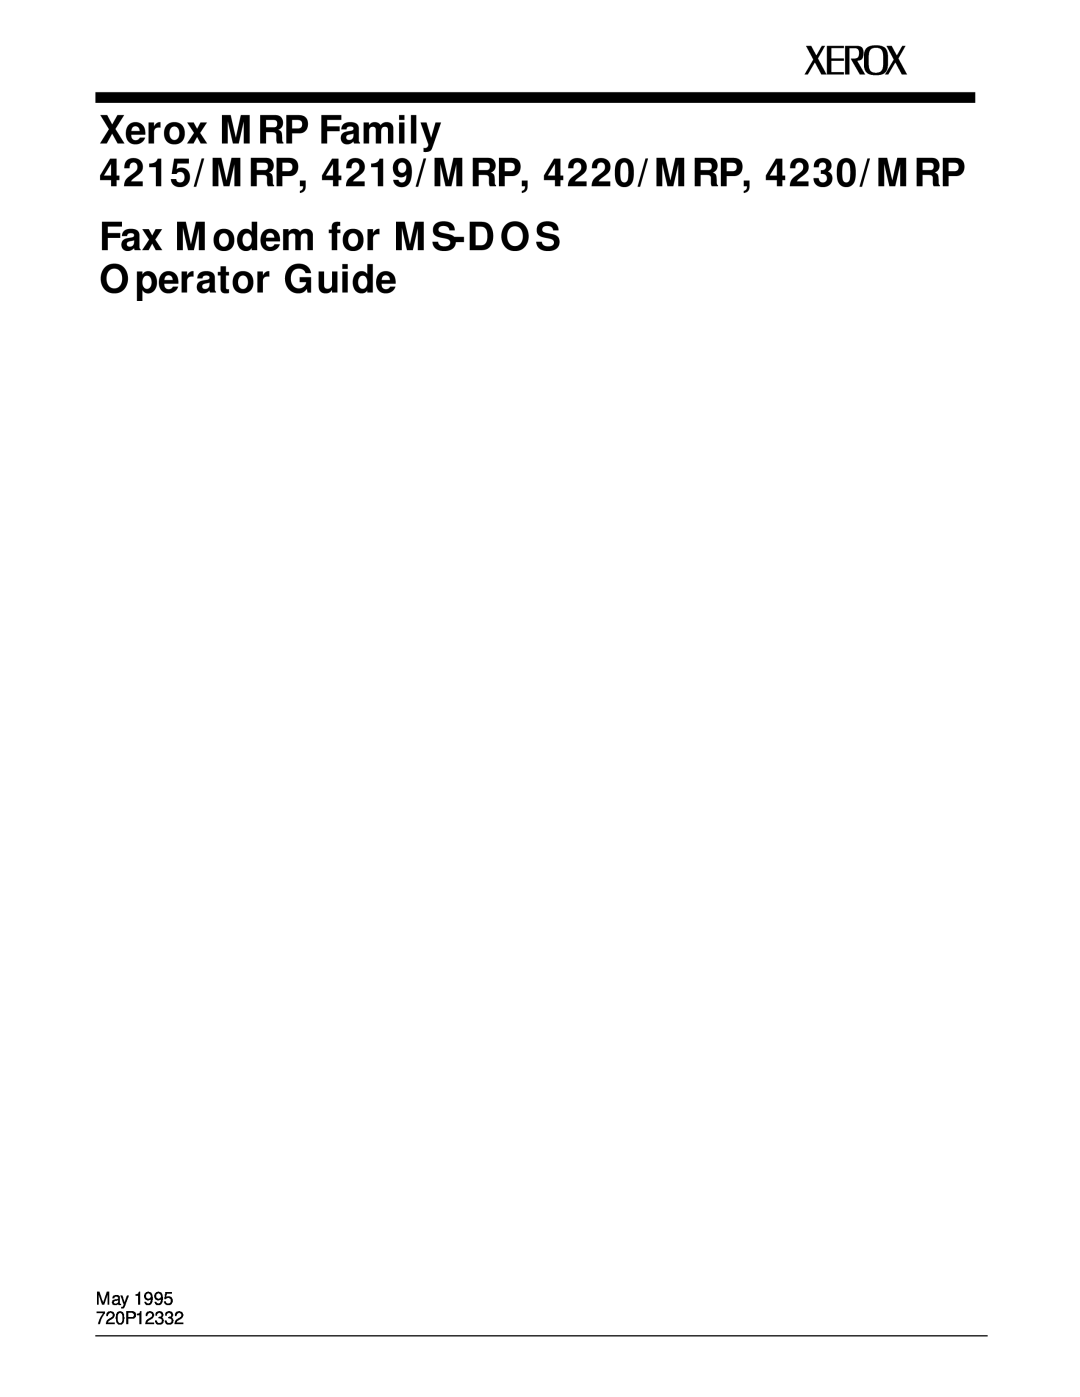 Xerox manual Xerox MRP Family, 4215/MRP, 4219/MRP, 4220/MRP, 4230/MRP, Fax Modem for MS-DOSOperator Guide 